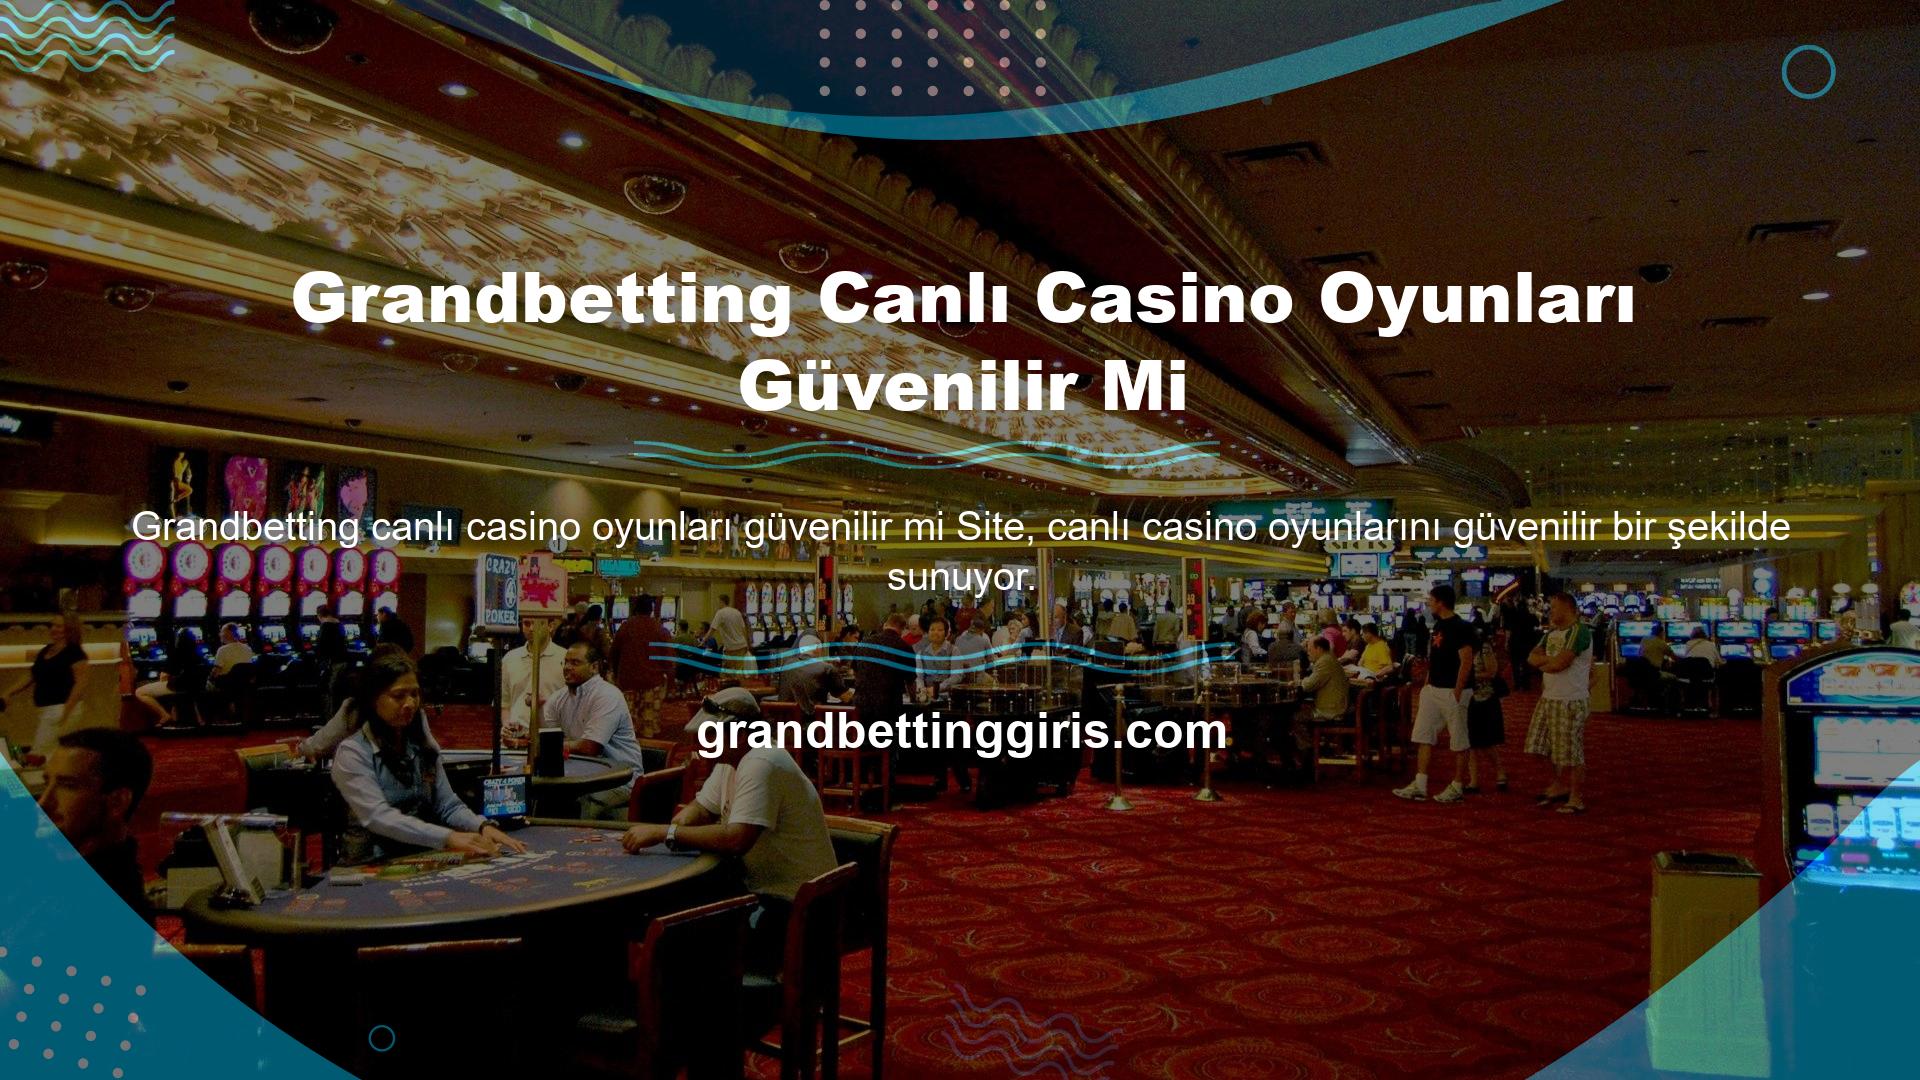 Grandbetting Canlı Casino sitesindeki bu oyun seçeneklerinin güvenilirliği ile ilgili en önemli şey, sitenin lisanslı olması ve bu lisansın güçlü bir isimle gelmesidir